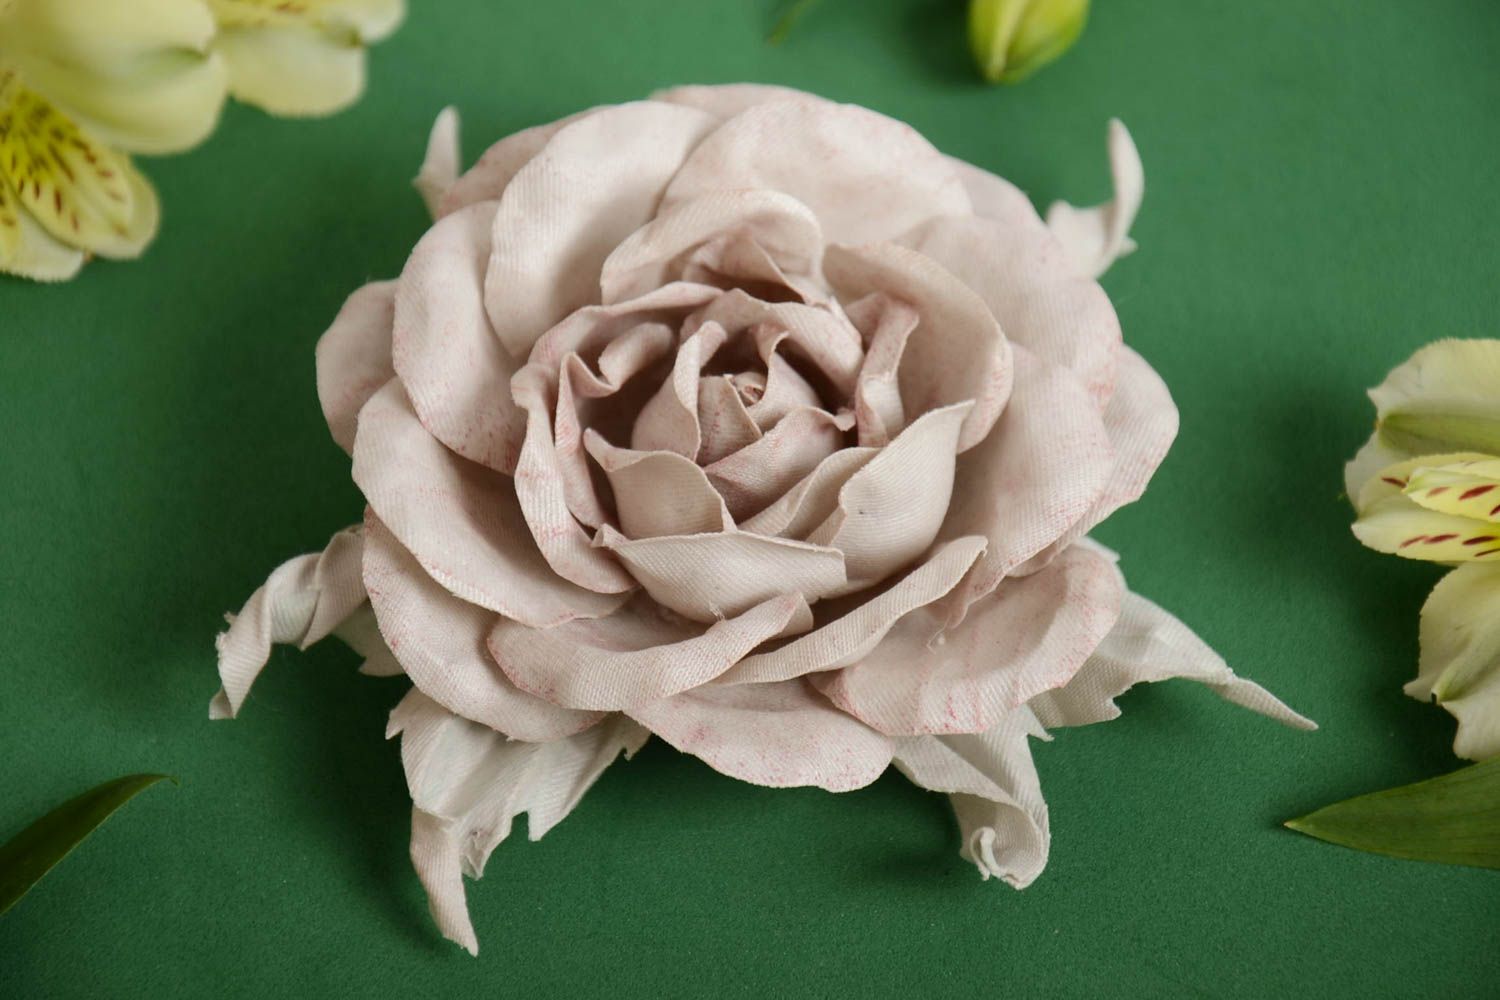 Брошь заколка из ткани бежевая красивая крупная стильная роза ручной работы фото 1